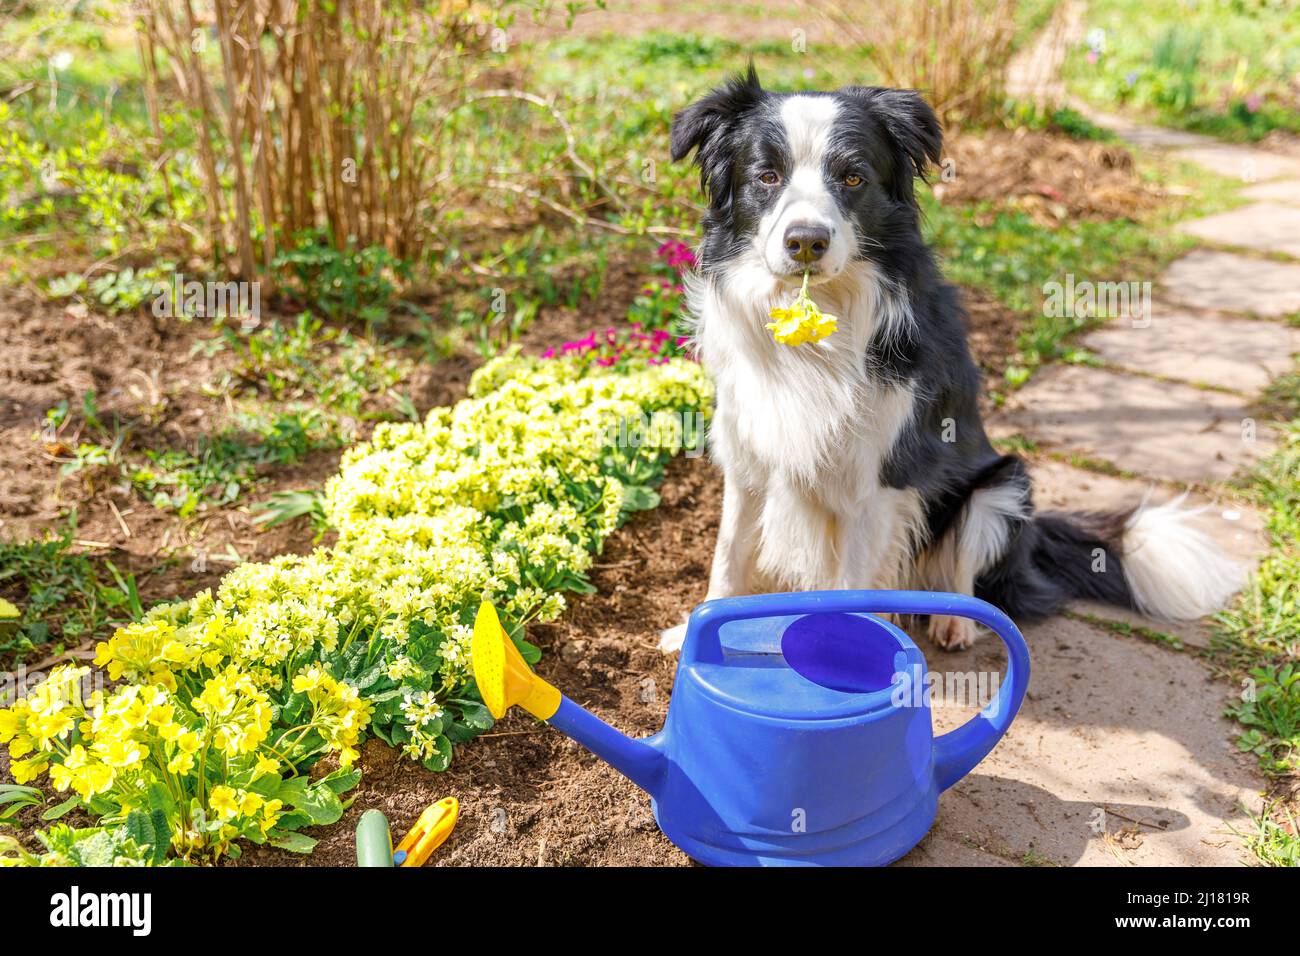 Retrato al aire de coqueta de perro con regadera el fondo del jardín. Perro perrito divertido como jardinero que obtiene riego puede para la irrigación. Concepto de jardinería y